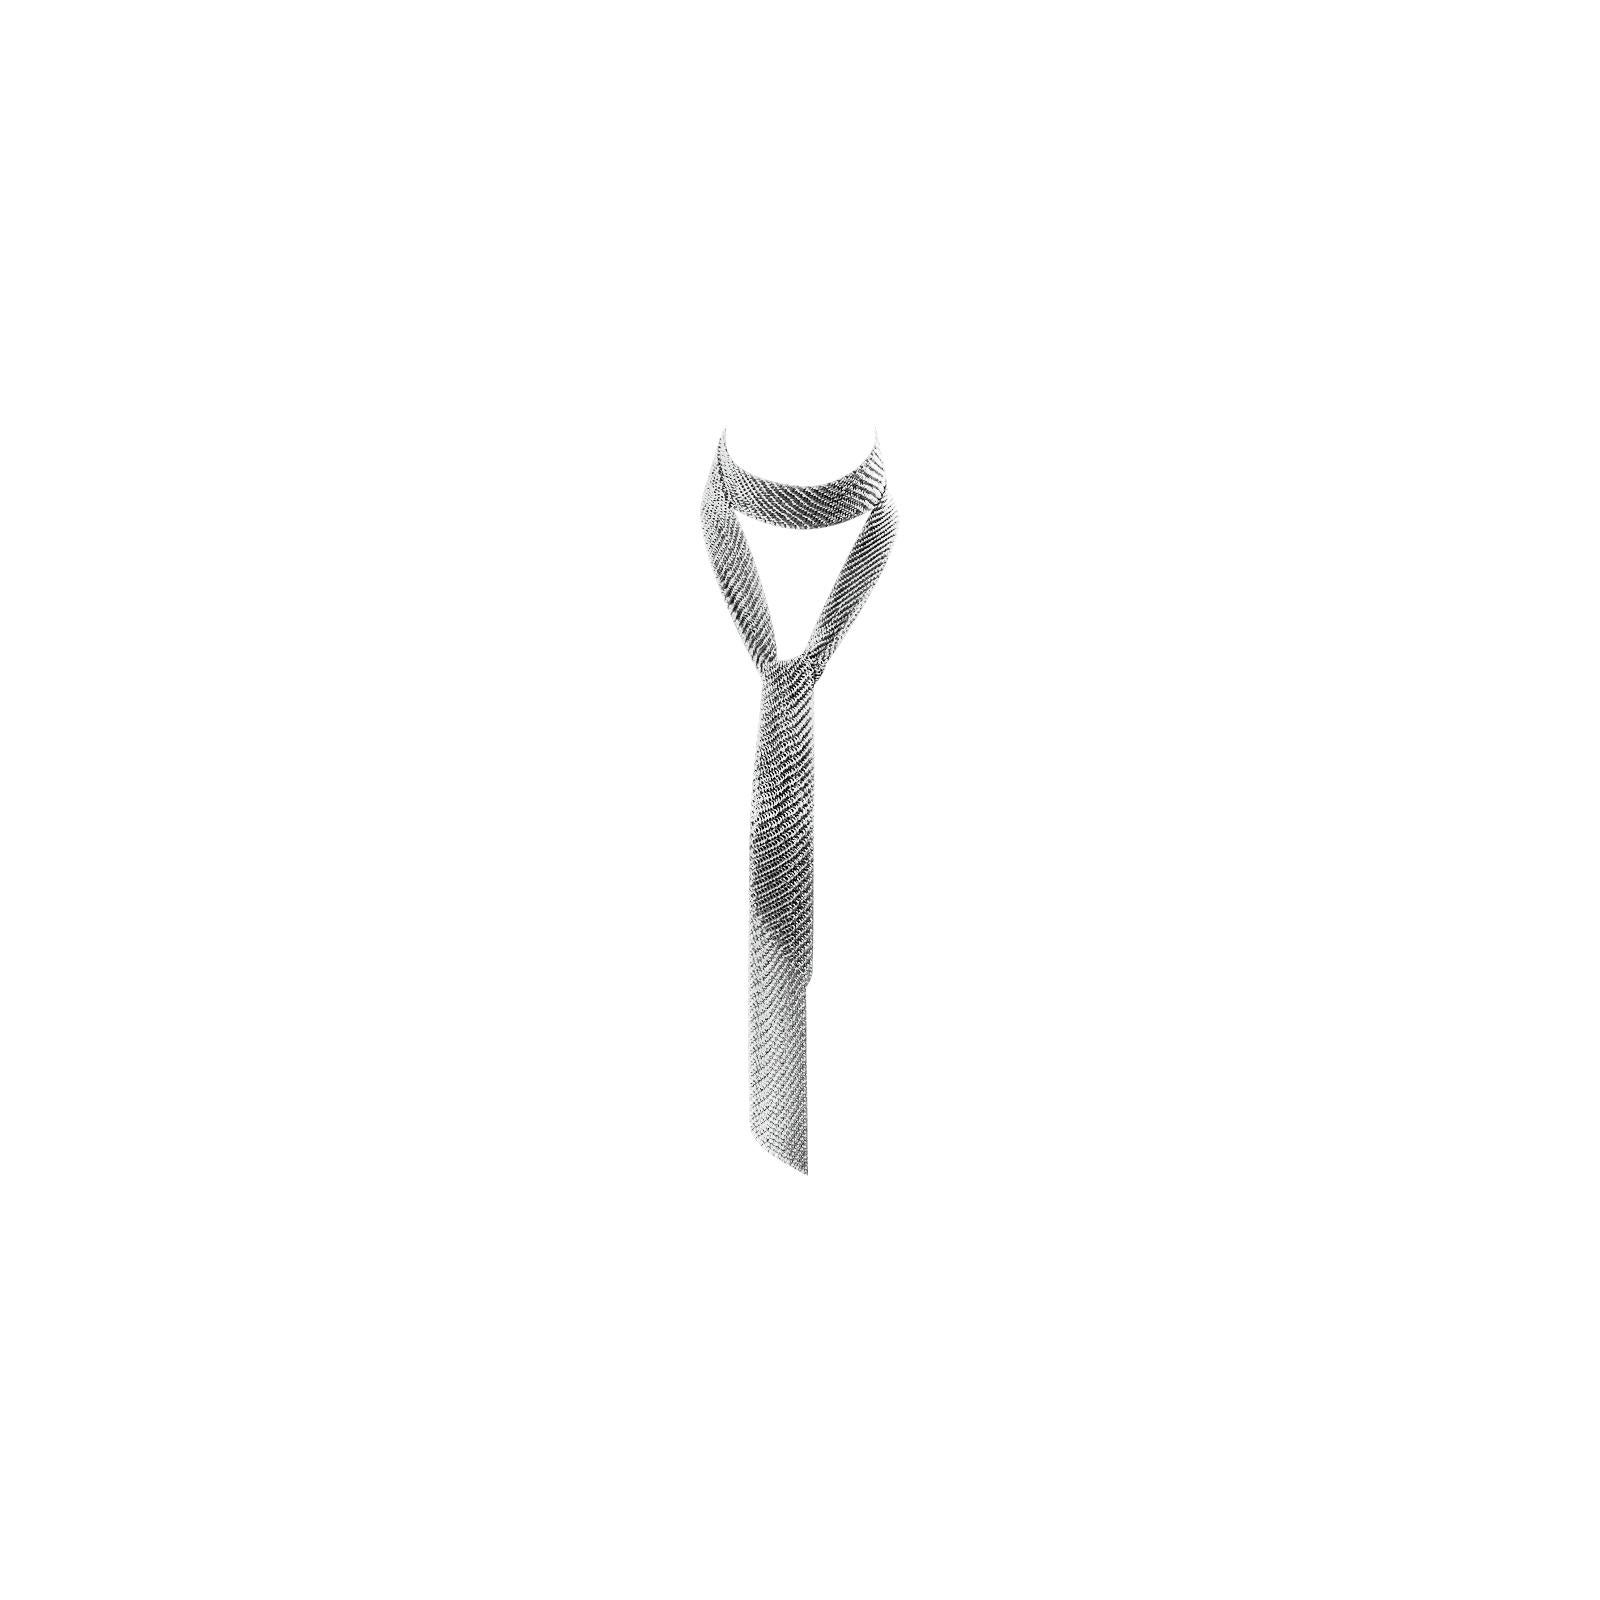 Vintage Dark Silver Metal Mesh Wrap Tie Necklace Lariat Circa 1980s For Sale 1